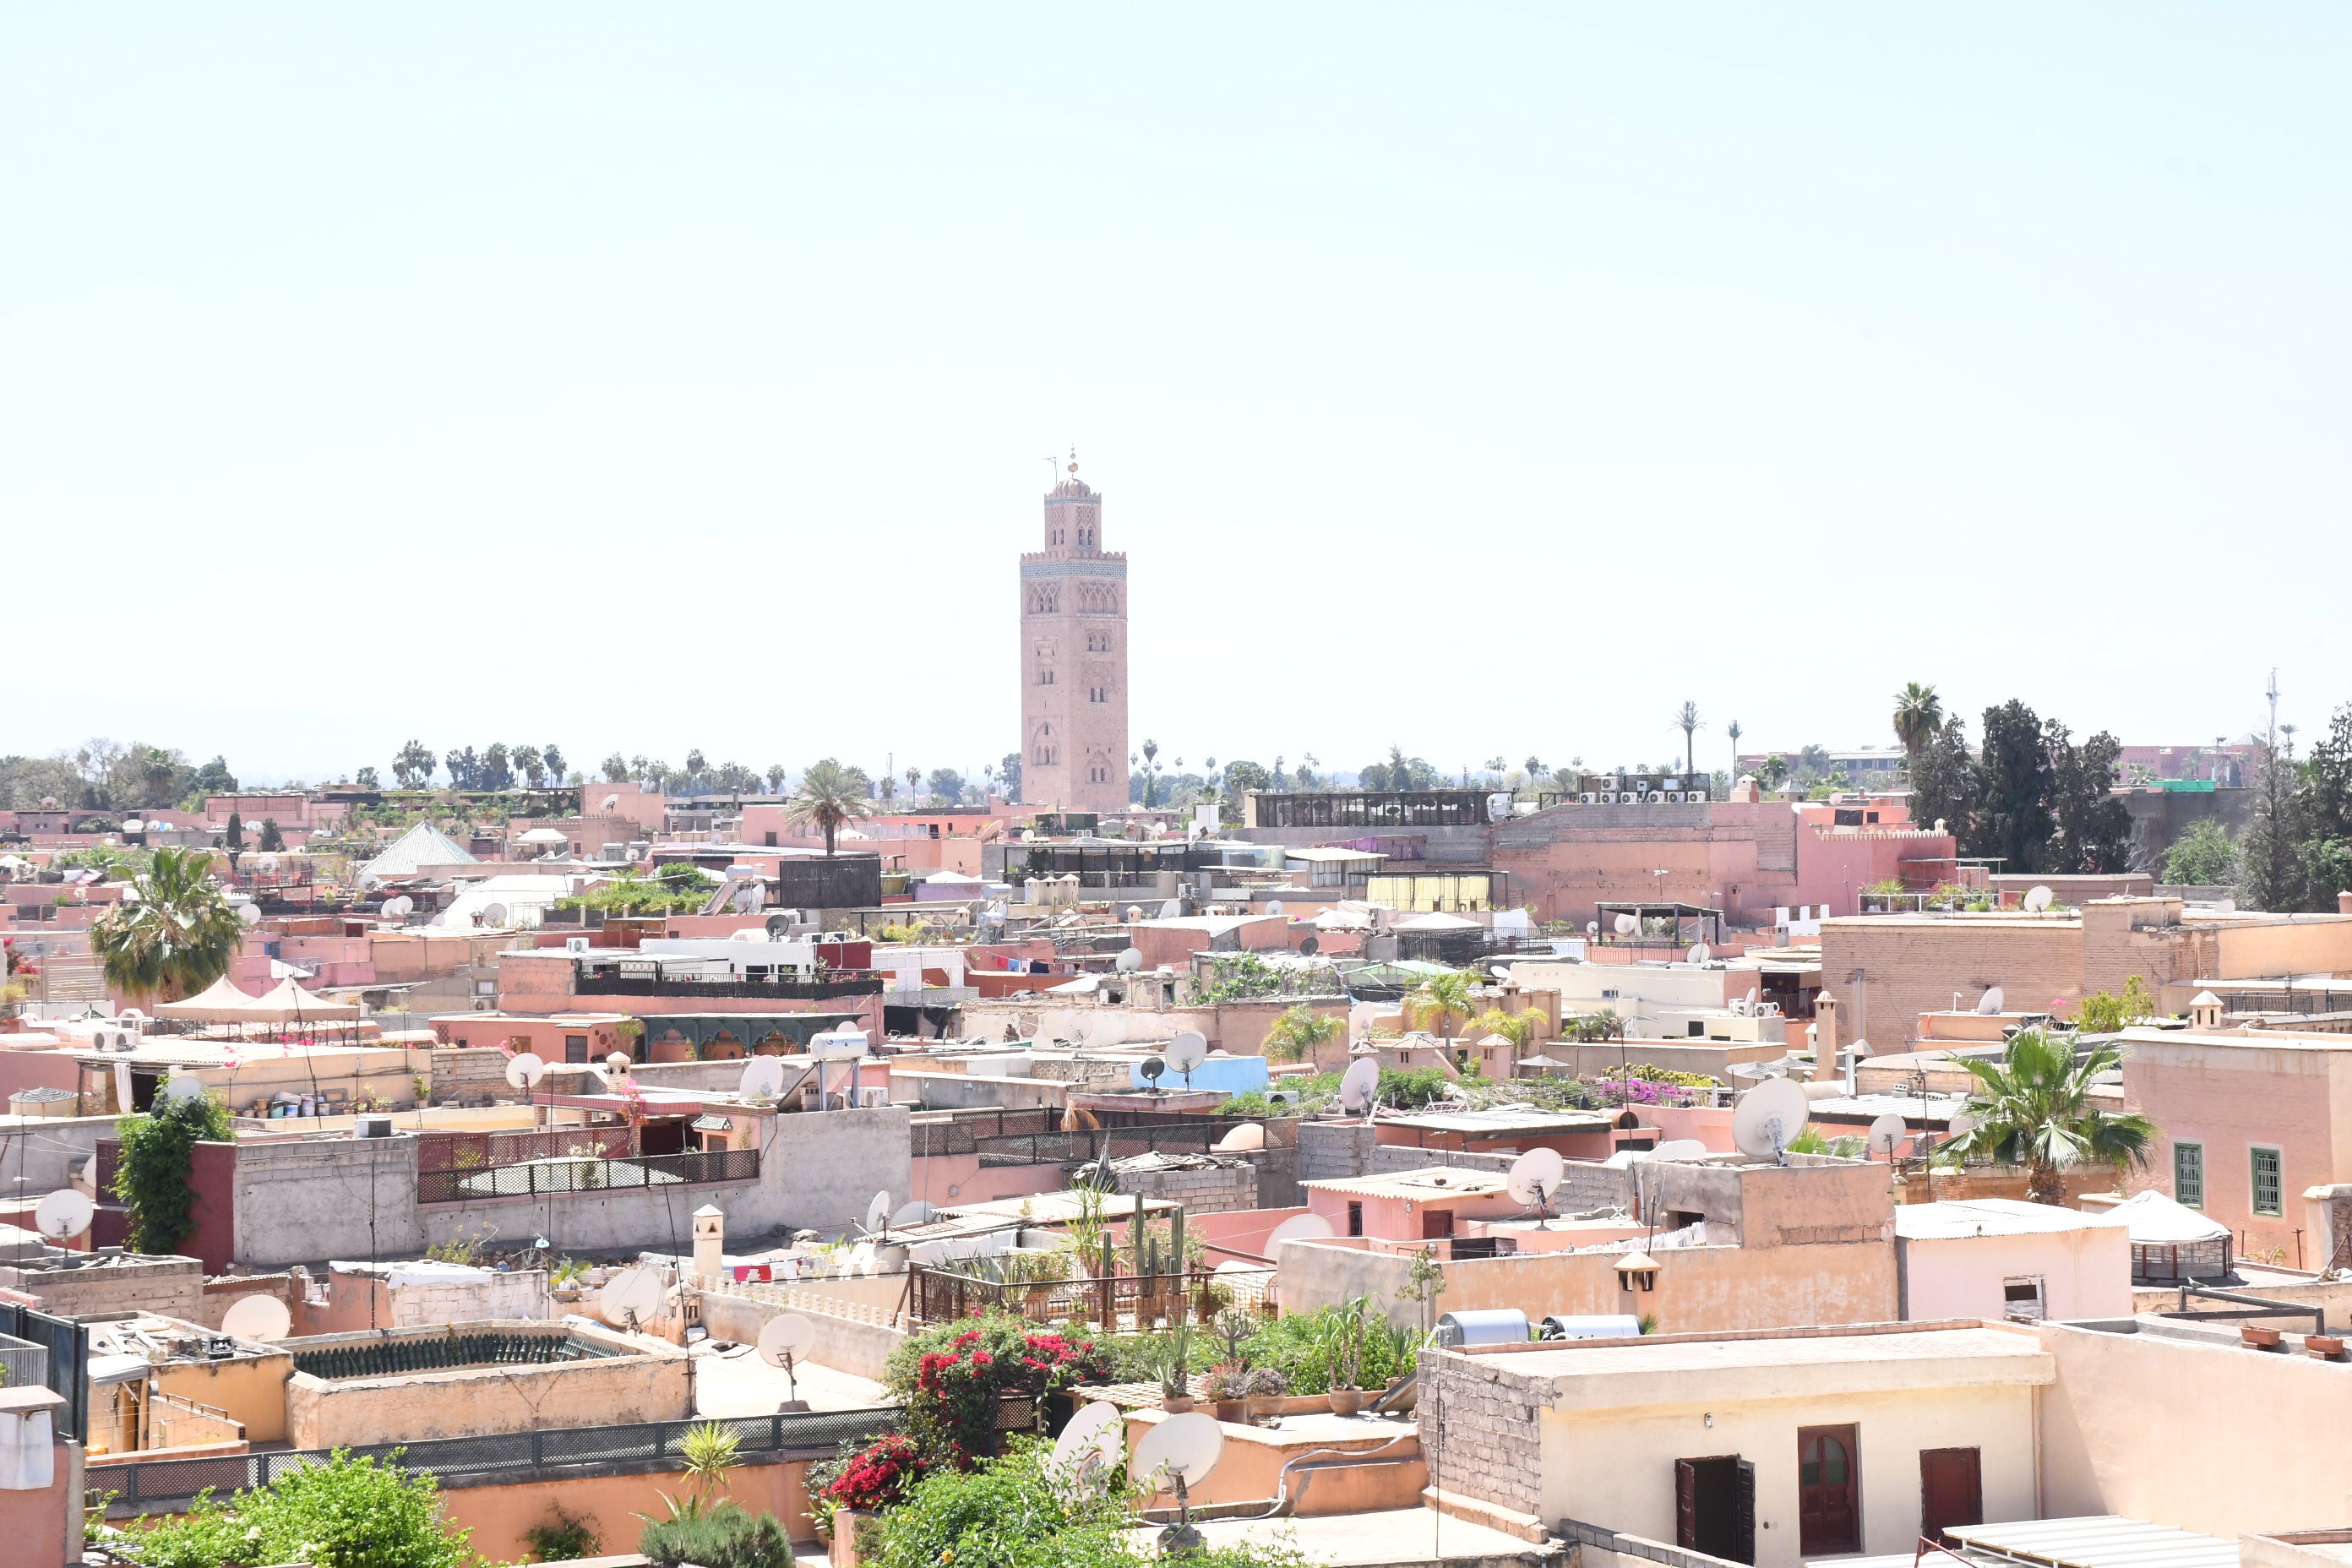 Agence urbaine de Marrakech : Homologation de 4 plans d'aménagement pour la maîtrise de l’expansion urbanistique